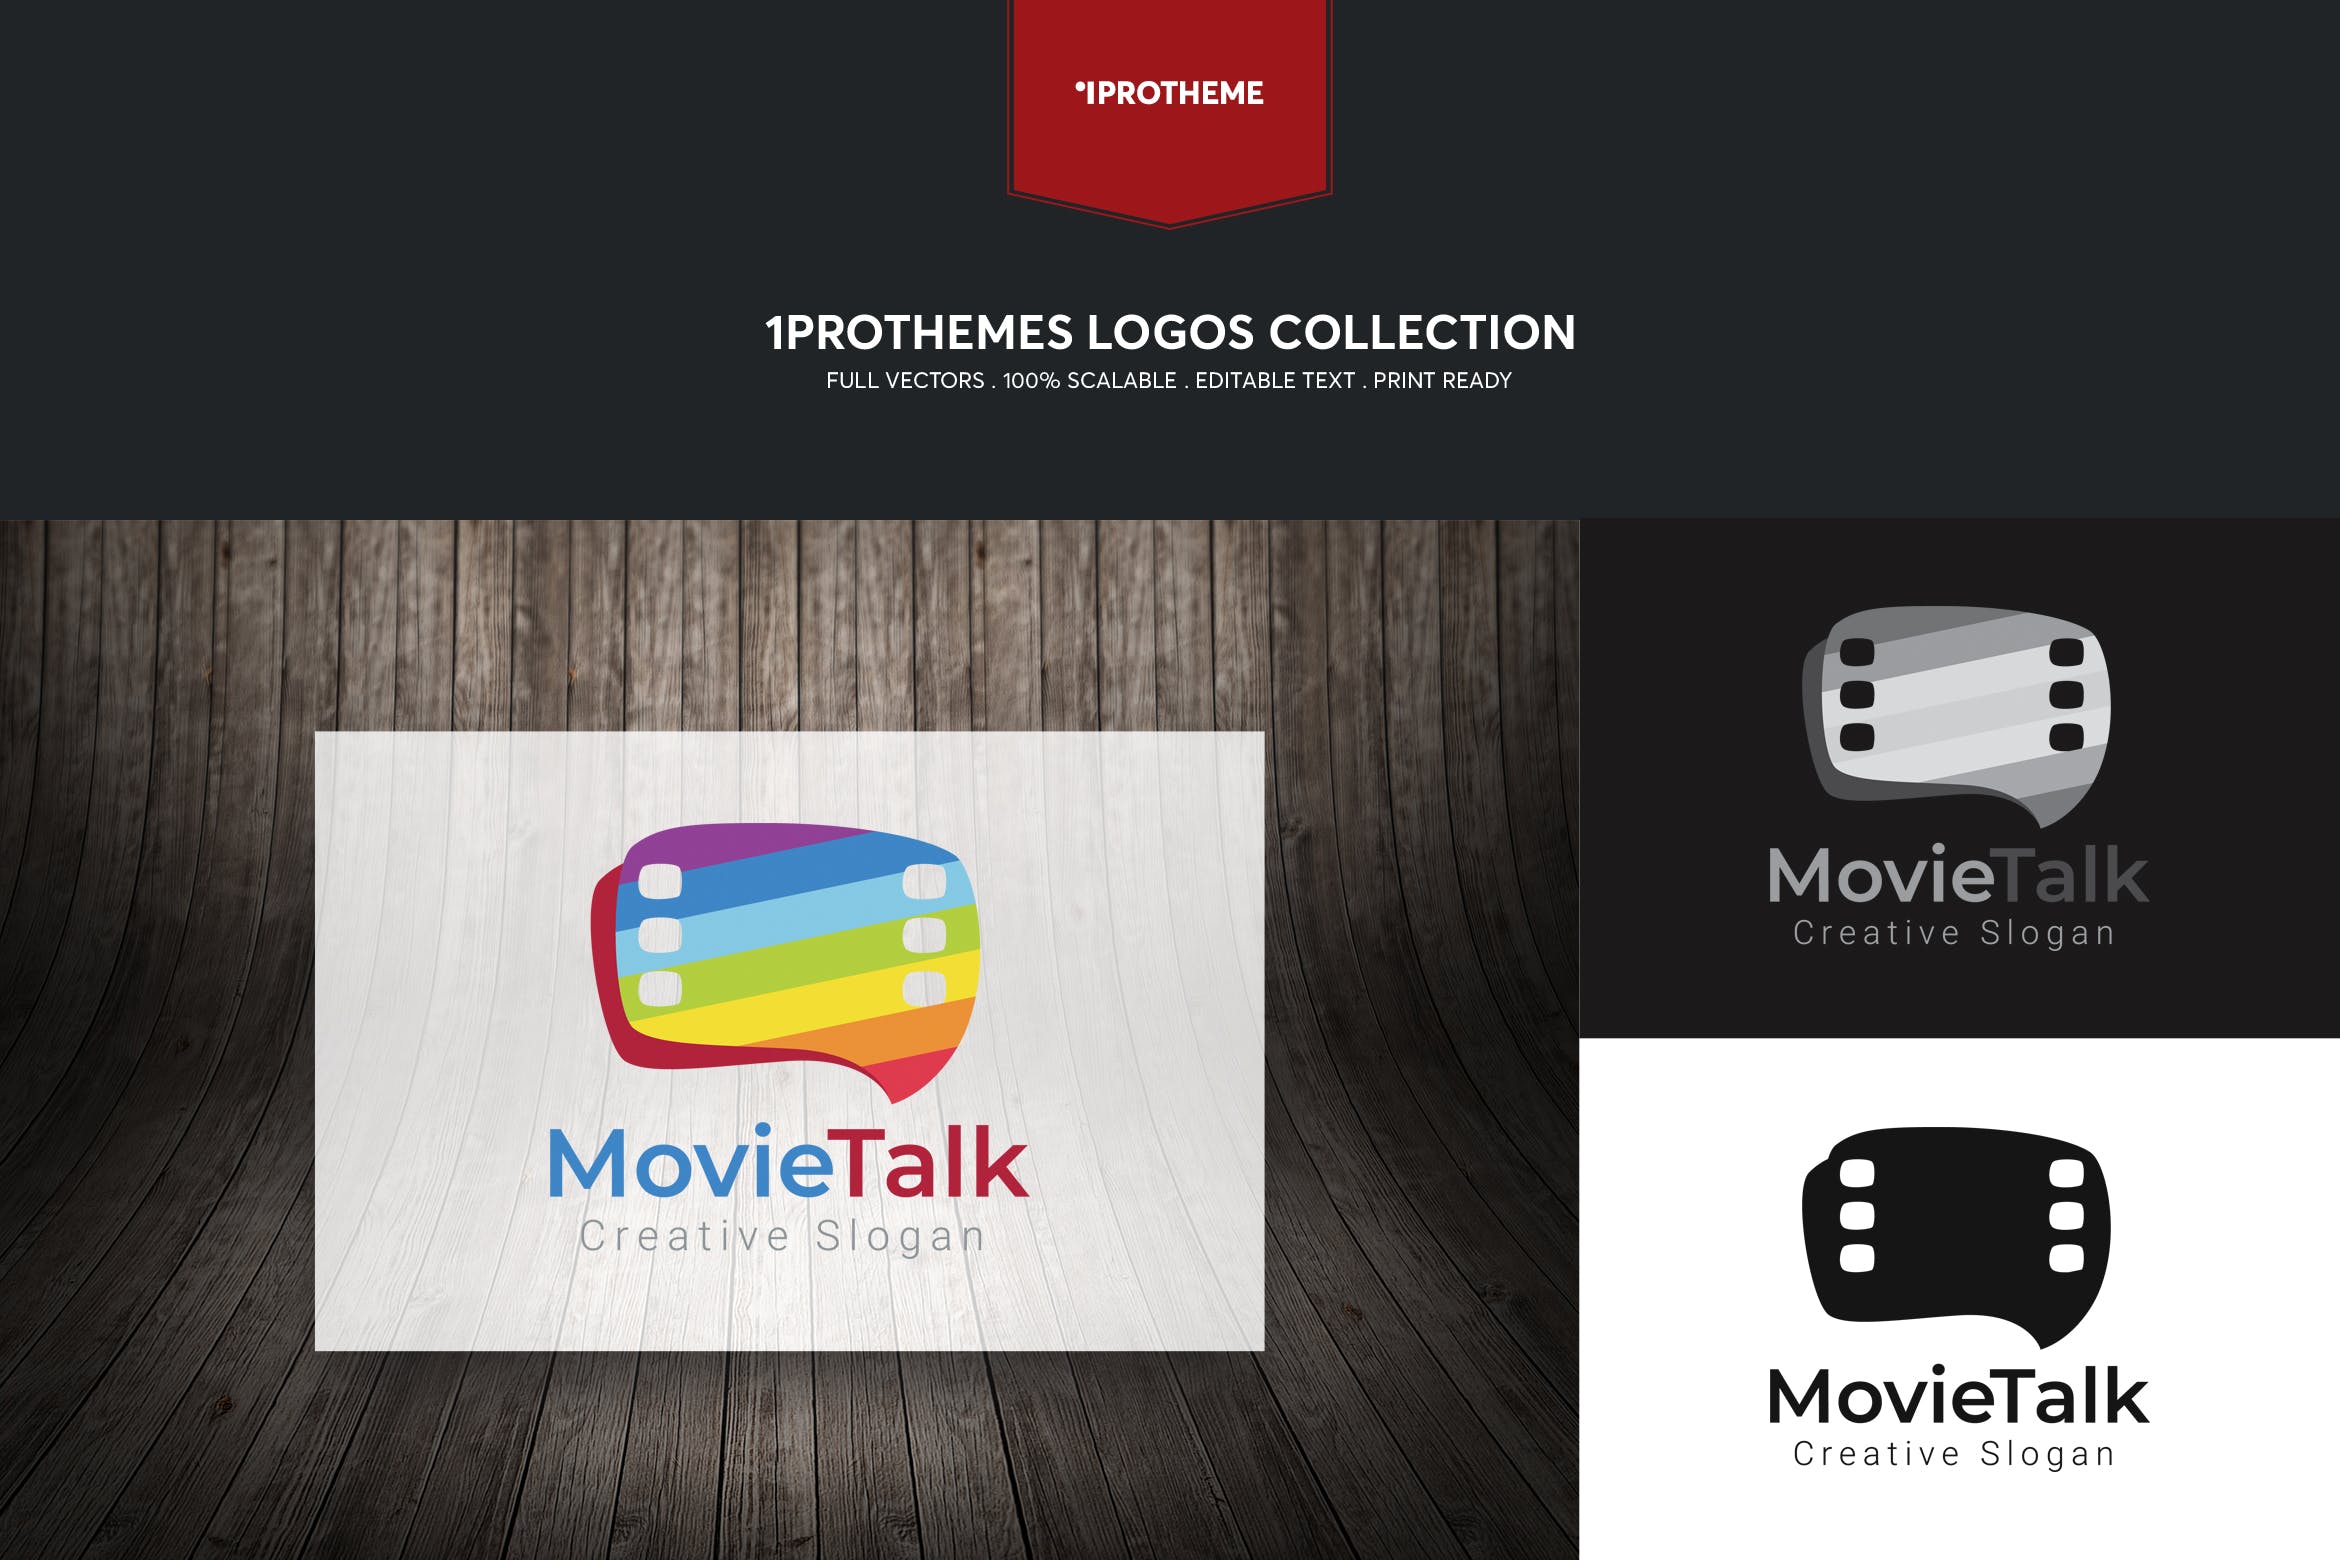 影评电影主题Logo设计非凡图库精选模板 Movie Talk Logo Template插图